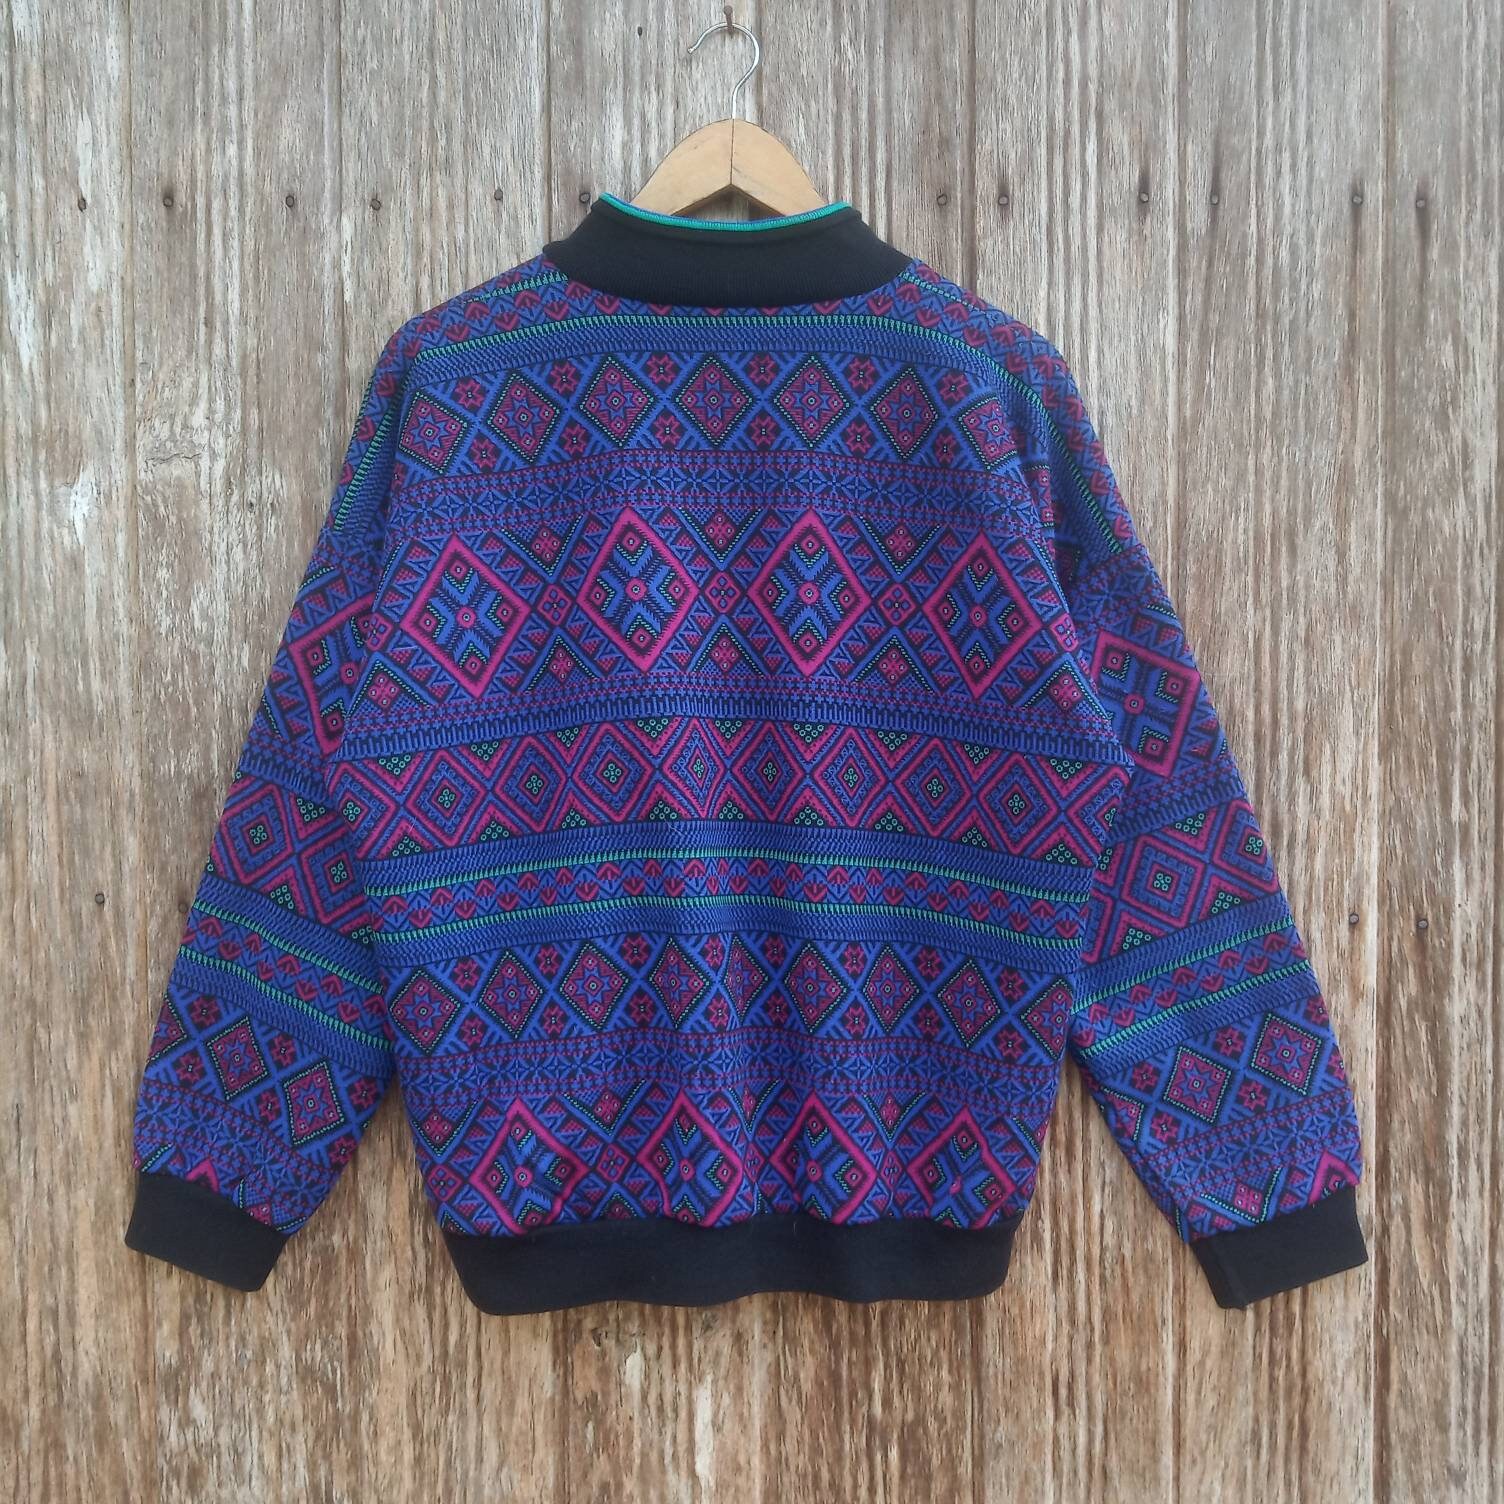 Vintage Psychedelic Geometric Art Colourful Design Sweatshirts - Etsy UK